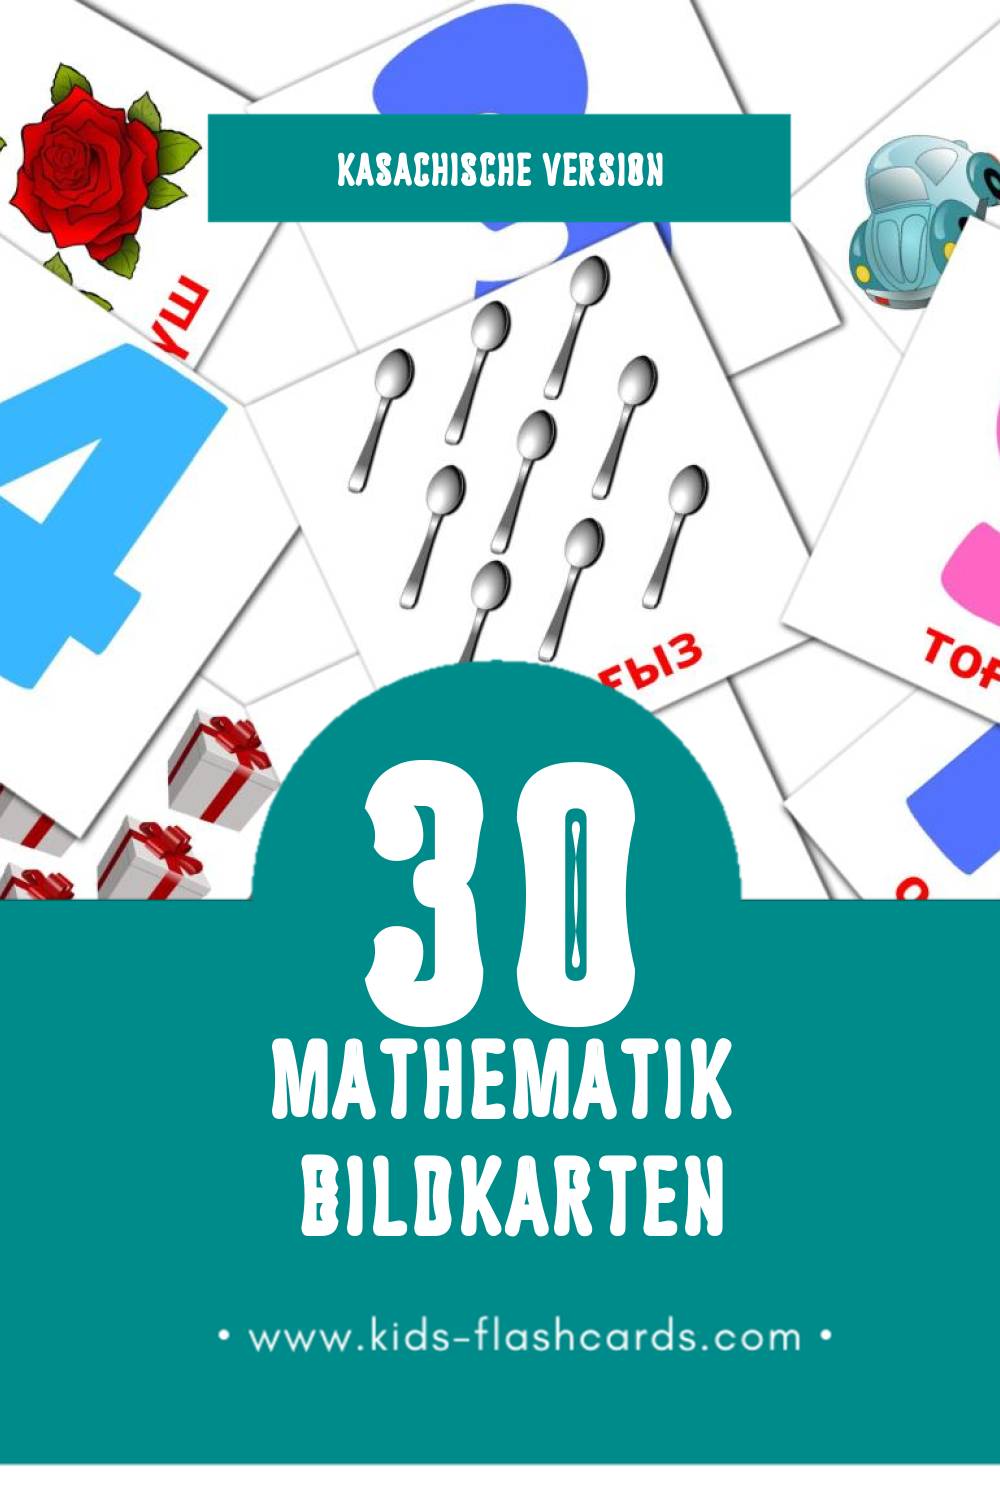 Visual Математика Flashcards für Kleinkinder (30 Karten in Kasachisch)